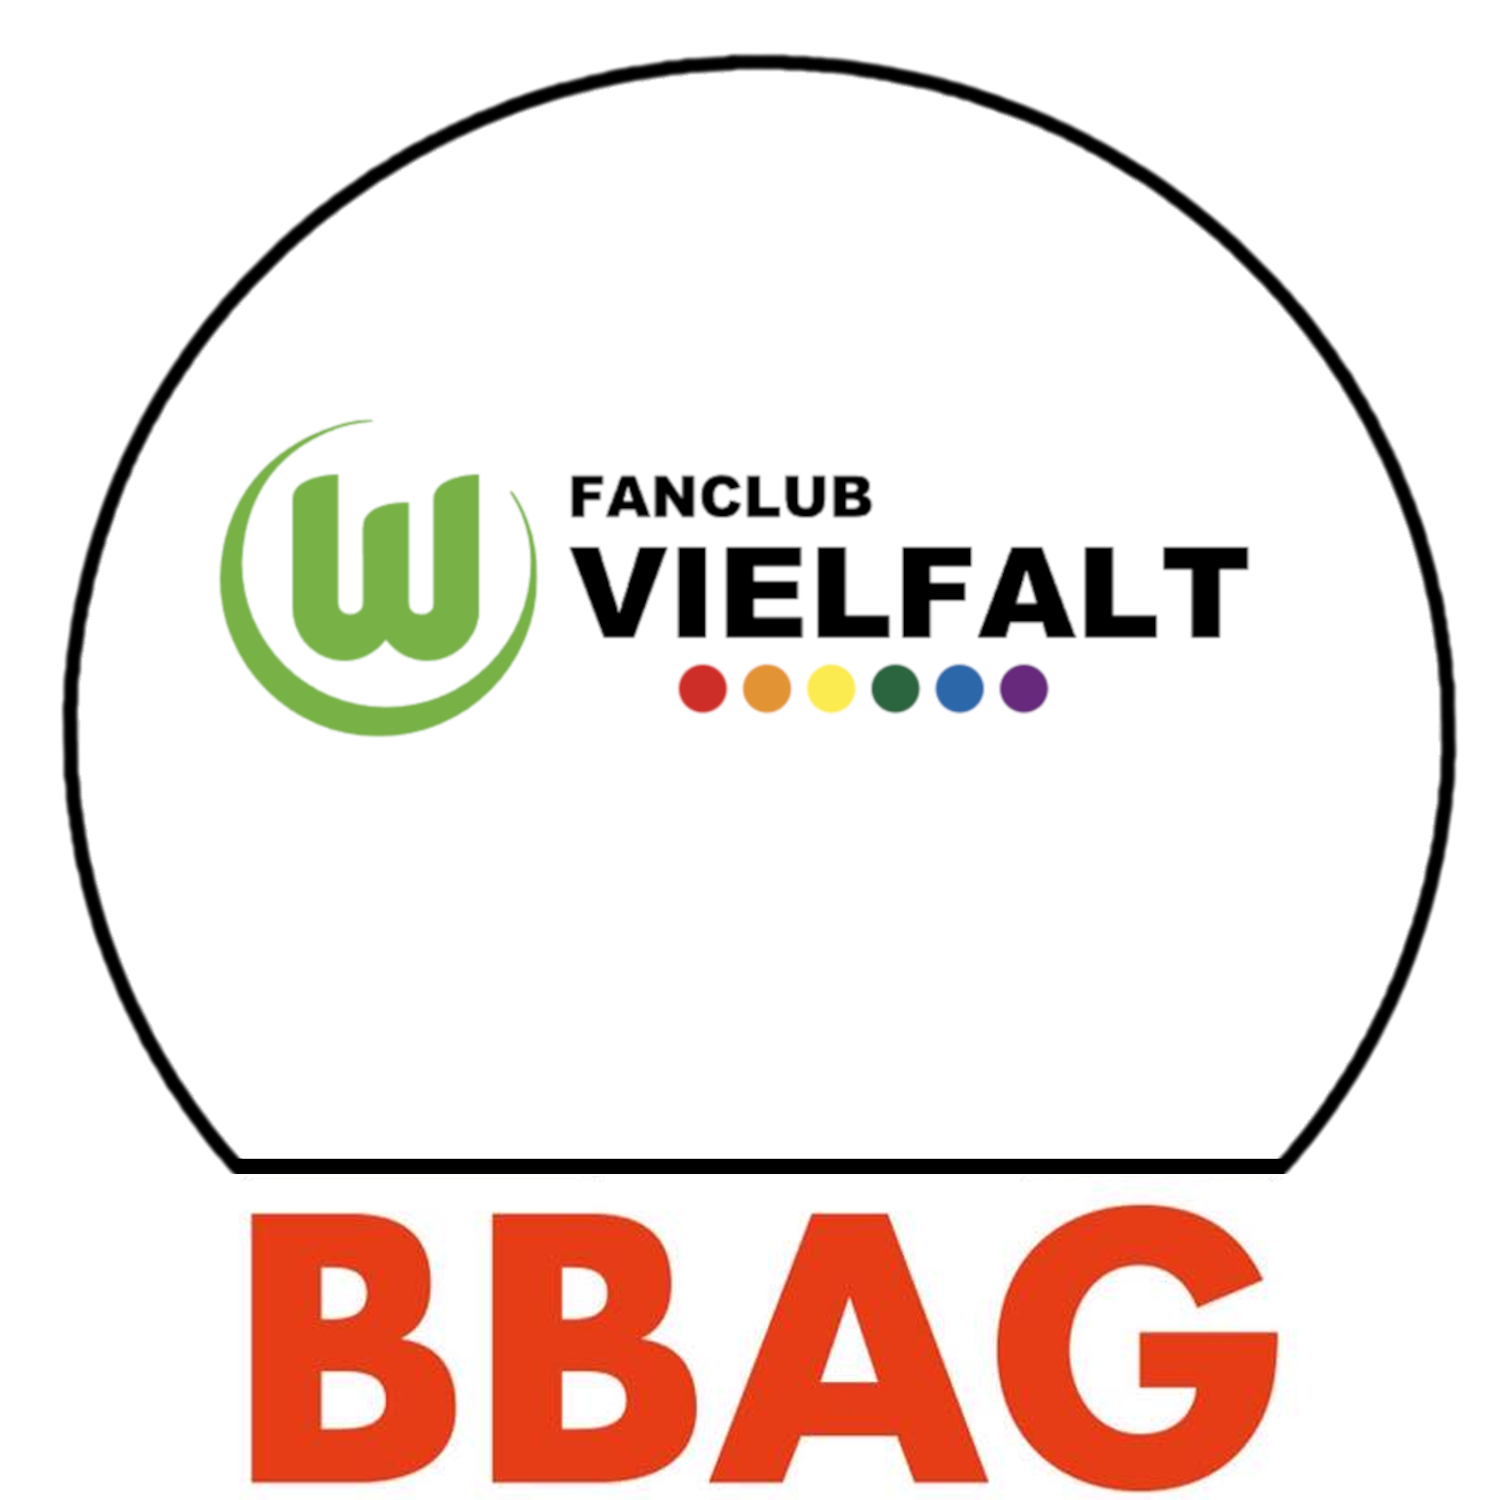 Ein schwarzer Kreis auf weißem Hintergrund. In der Mitte des kreises ist das Logo vom VfL Wolfsburg und links davon steht Fanclub Vielfalt. Darunter 7 Punkte in Regenbogenfarben. Unter dem Kreis steht groß in roter Schrift BBAG.